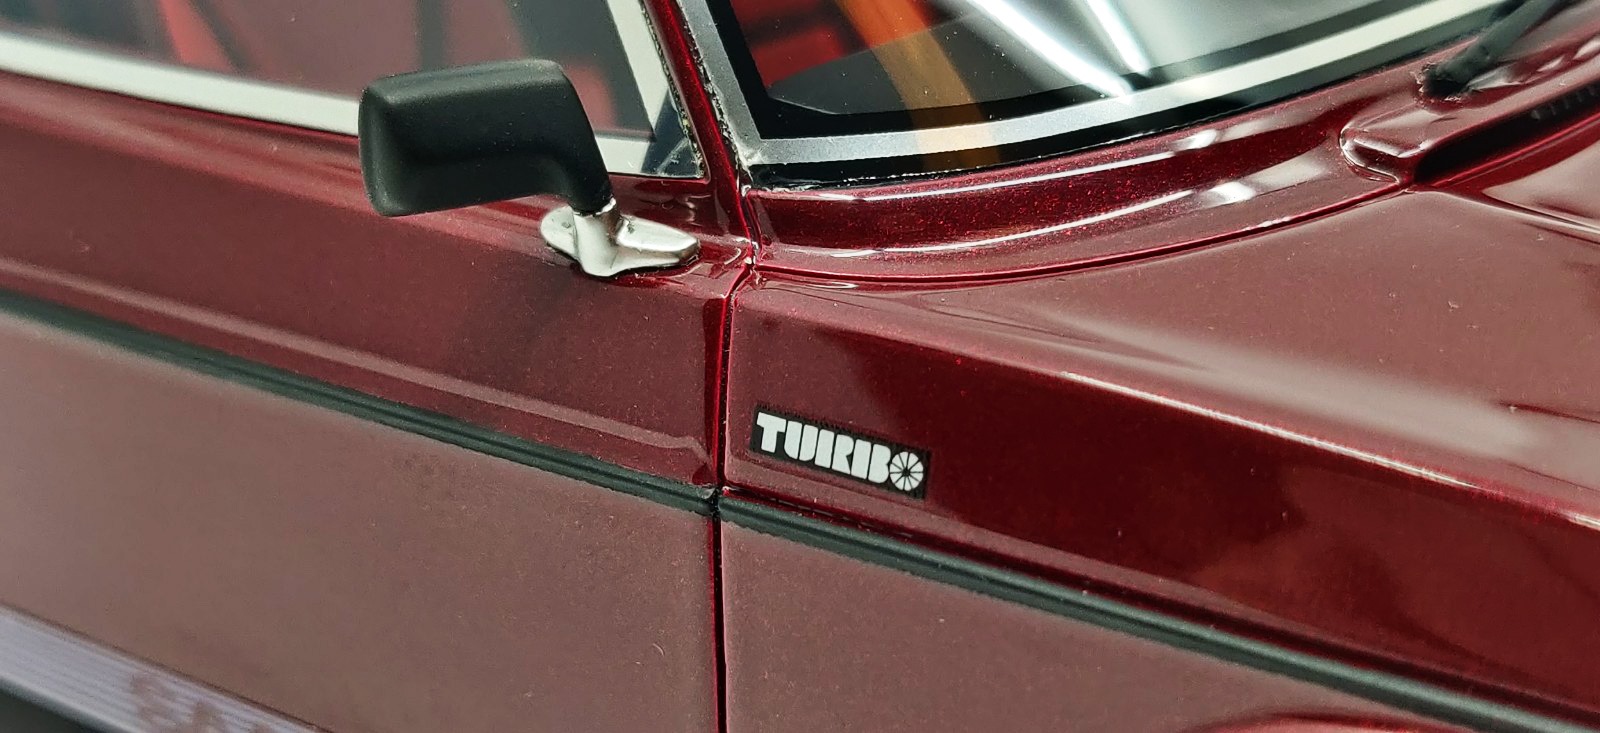 99 Turbo - 1978 3-door Bild 8